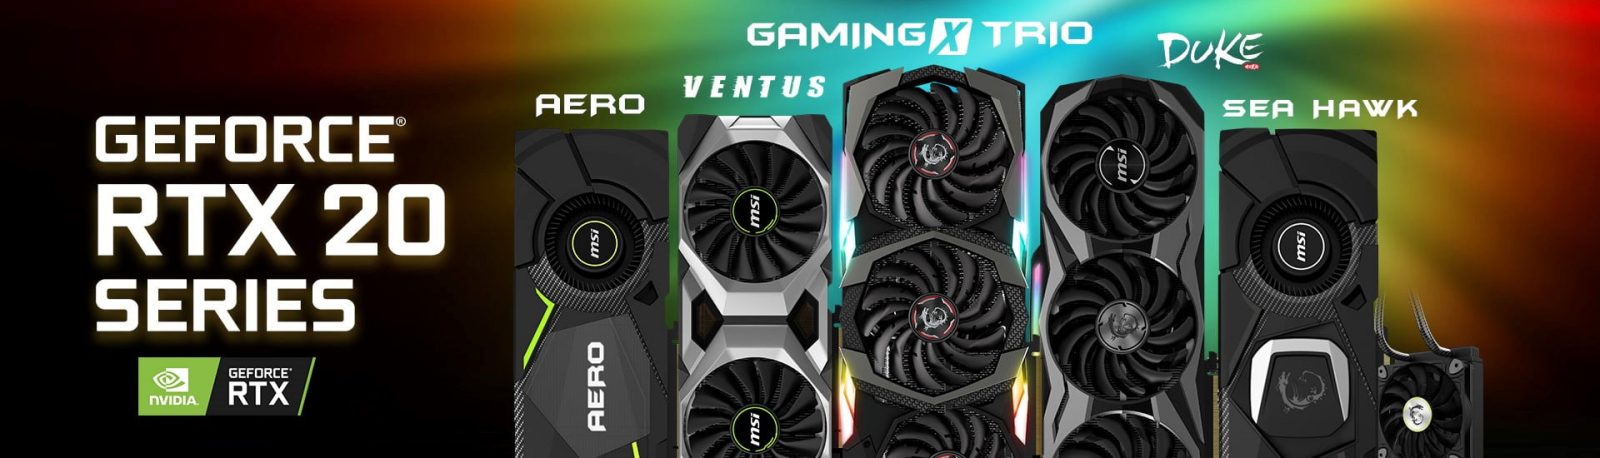 MSI lancia la nuova famiglia di schede grafiche basate sulle GPU GeForce RTX serie 20 appena presentate da NVIDIA 1